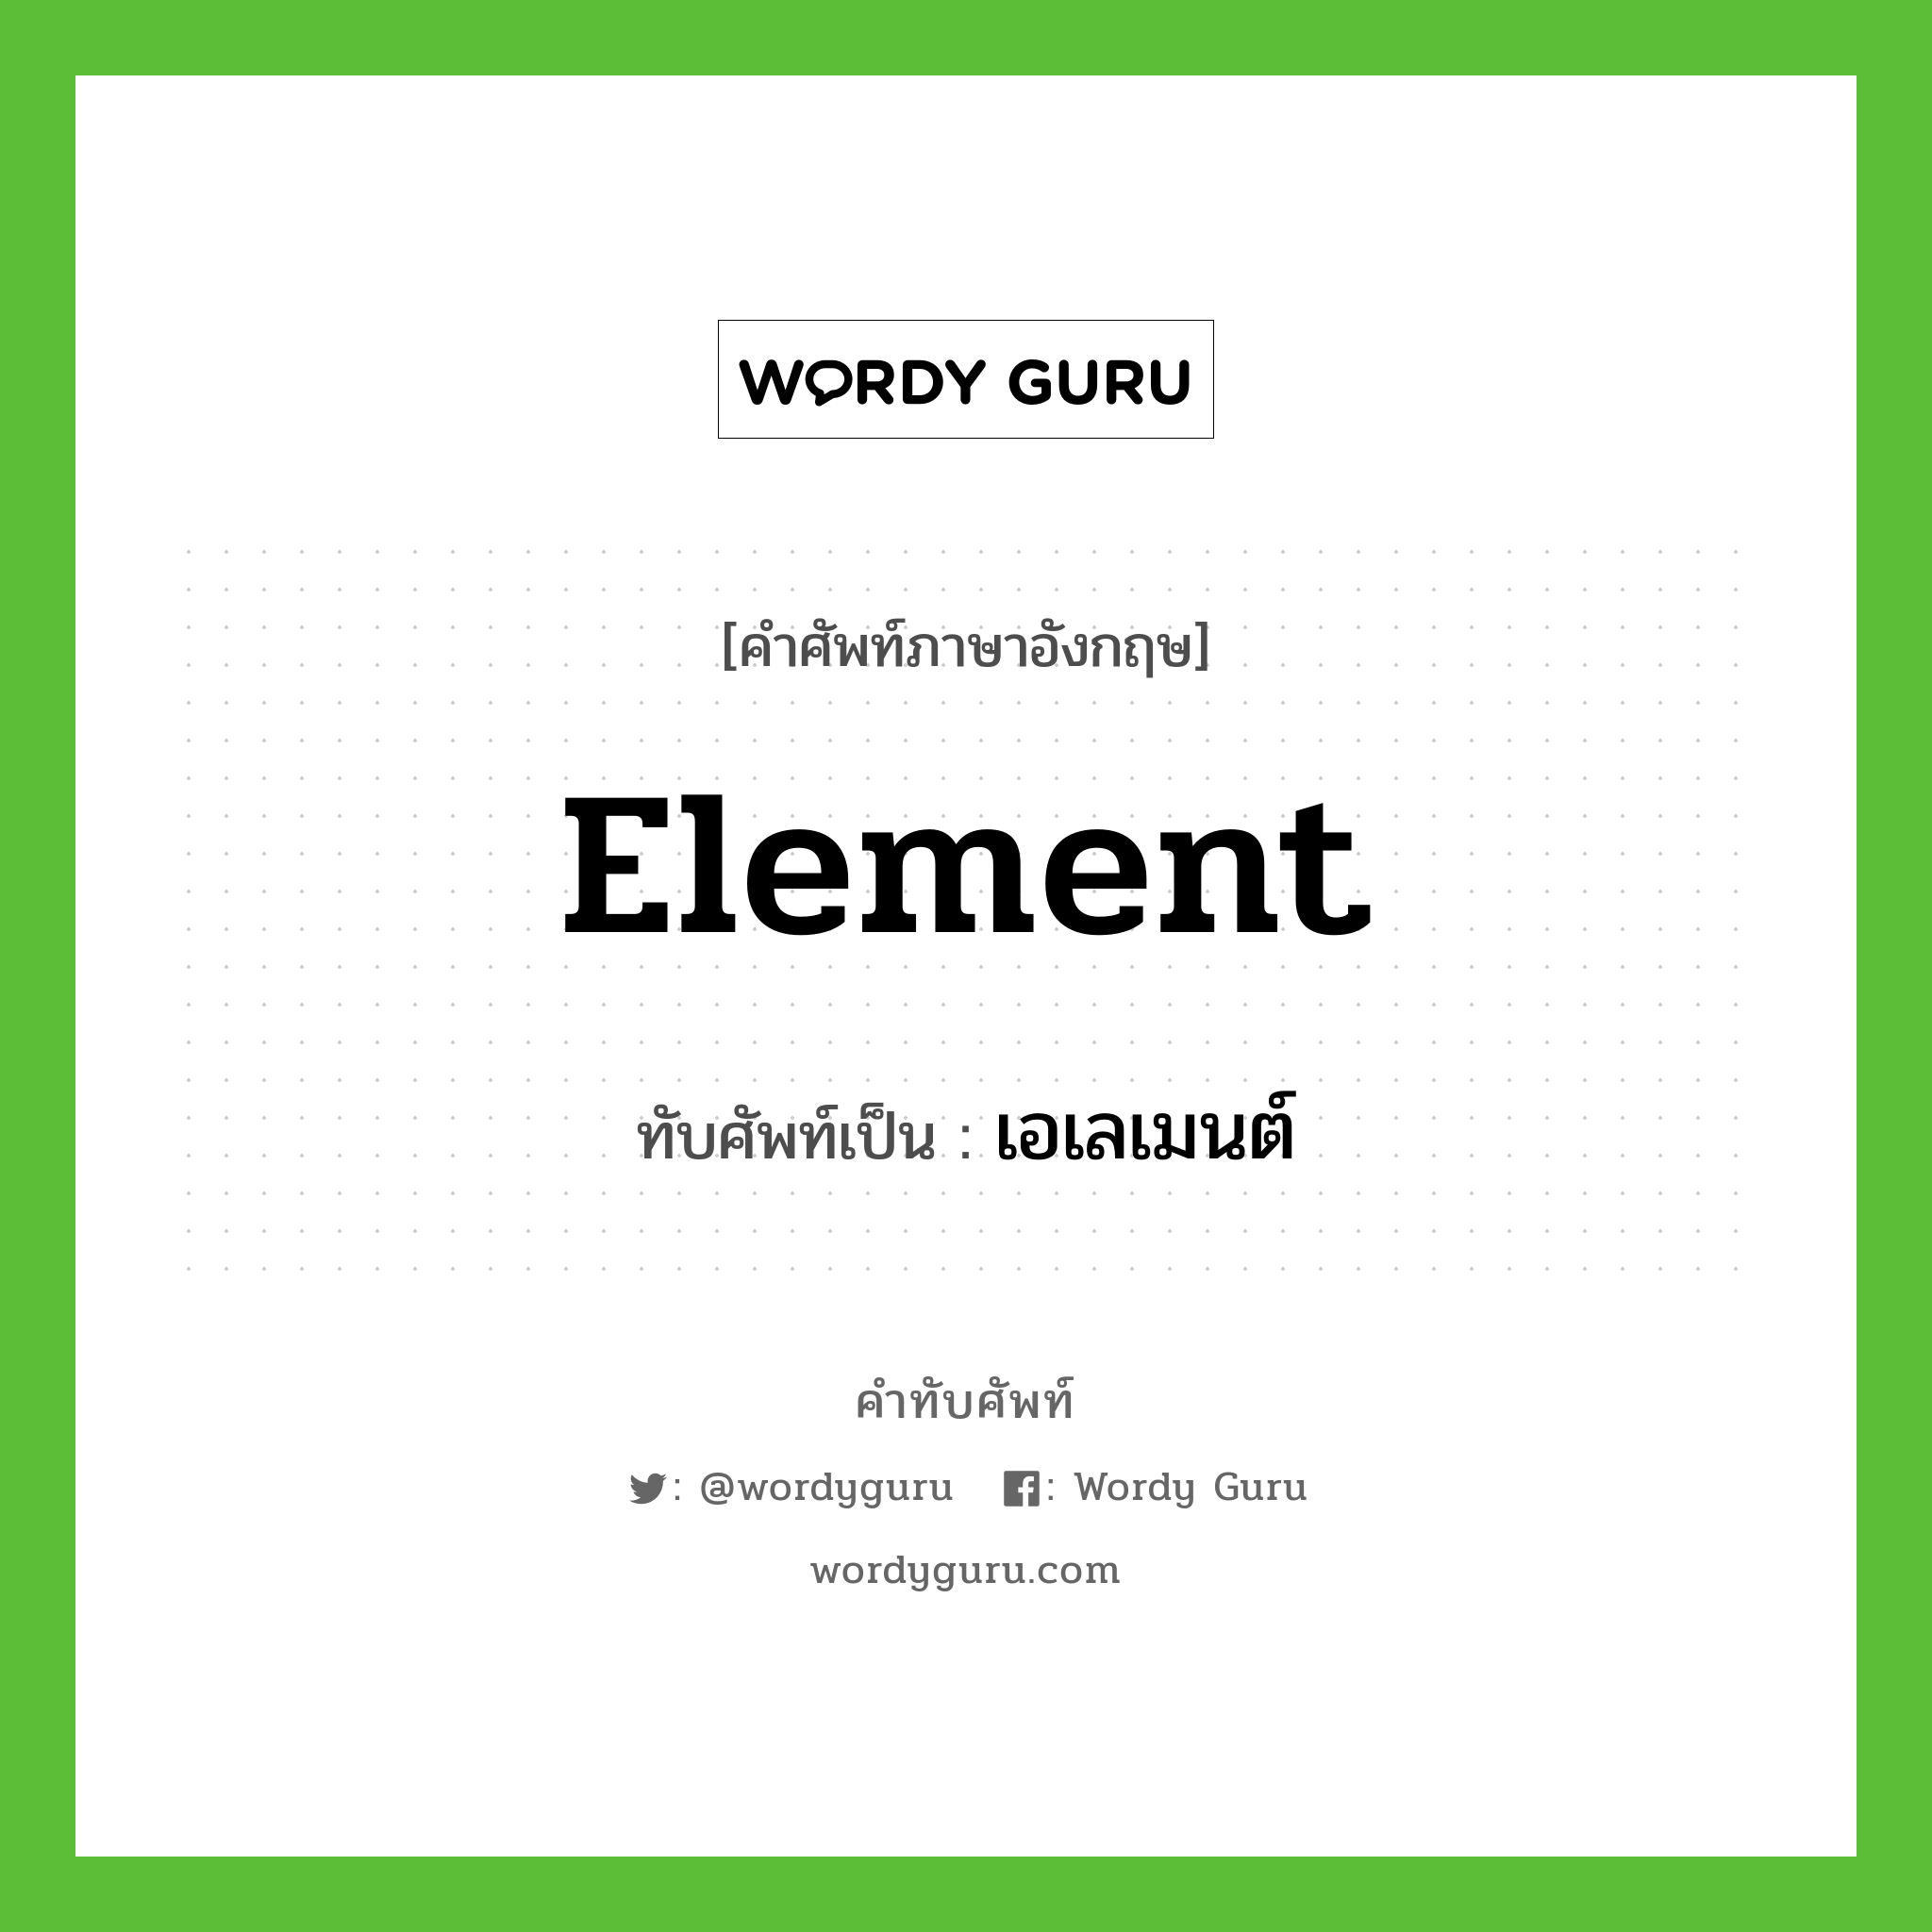 element เขียนเป็นคำไทยว่าอะไร?, คำศัพท์ภาษาอังกฤษ element ทับศัพท์เป็น เอเลเมนต์